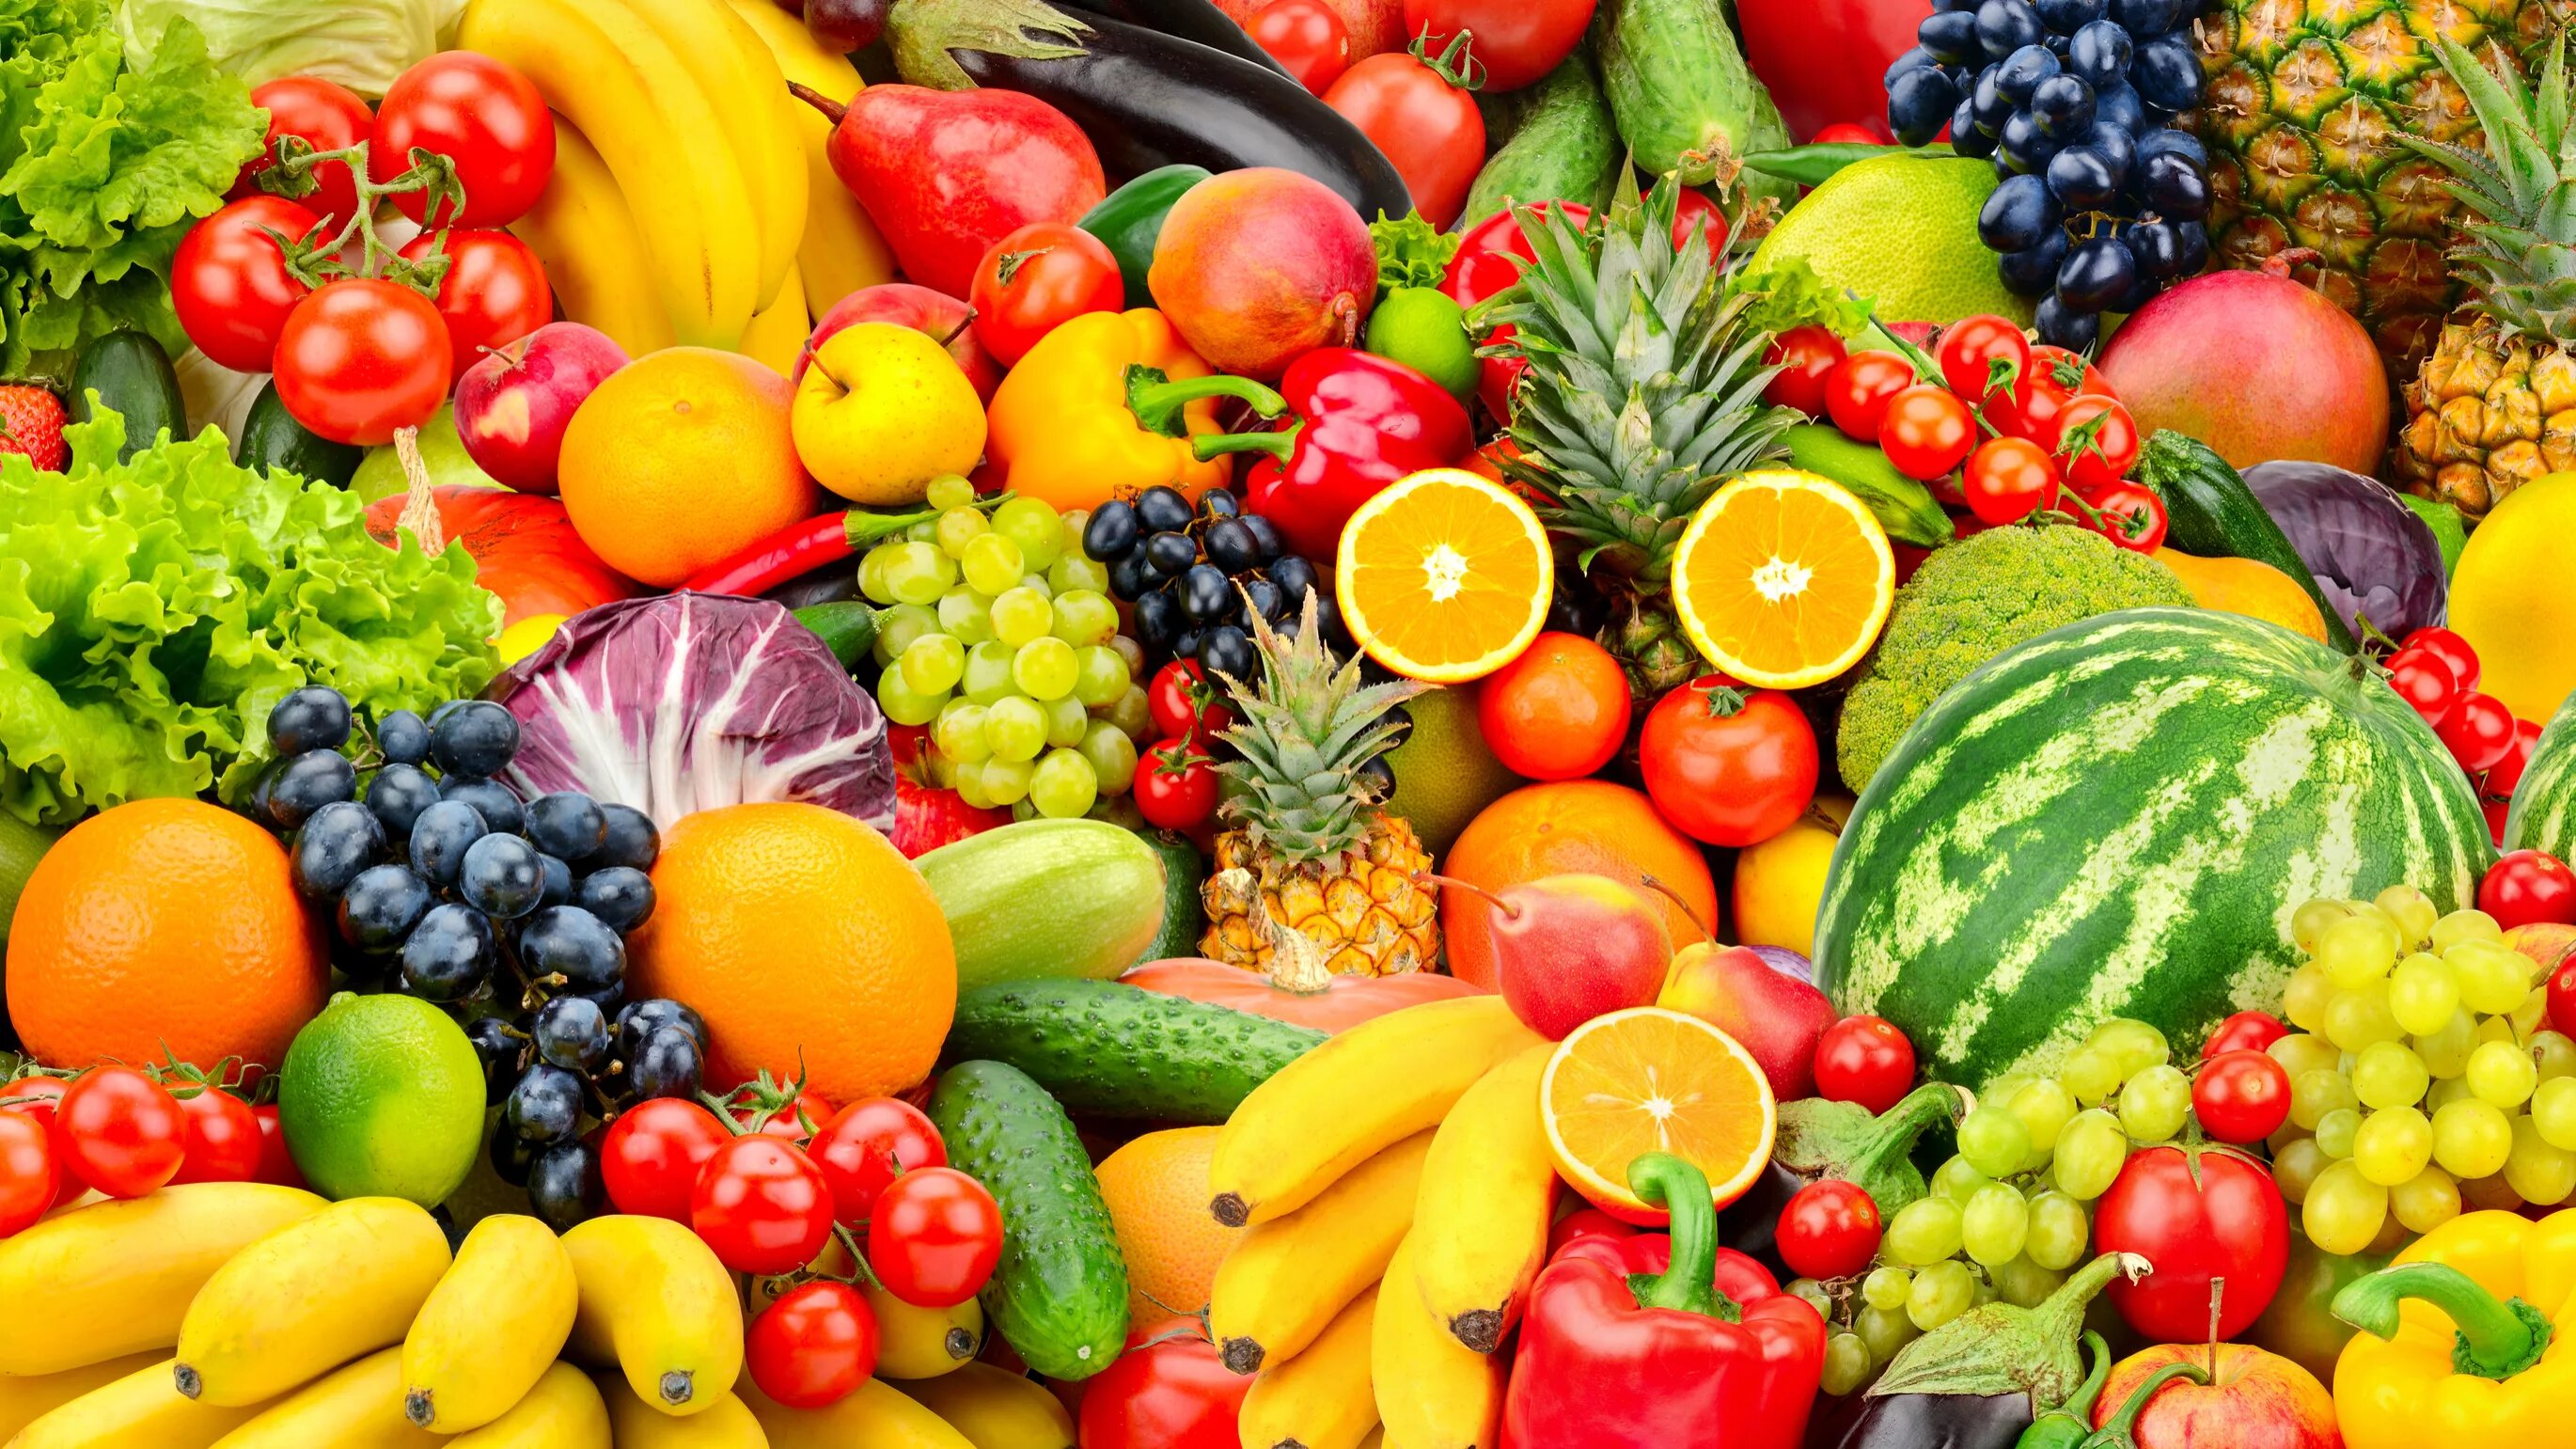 Лето время овощей и фруктов. Овощи и фрукты. Яркие овощи. Разнообразие фруктов и овощей. Фрукты баннер.